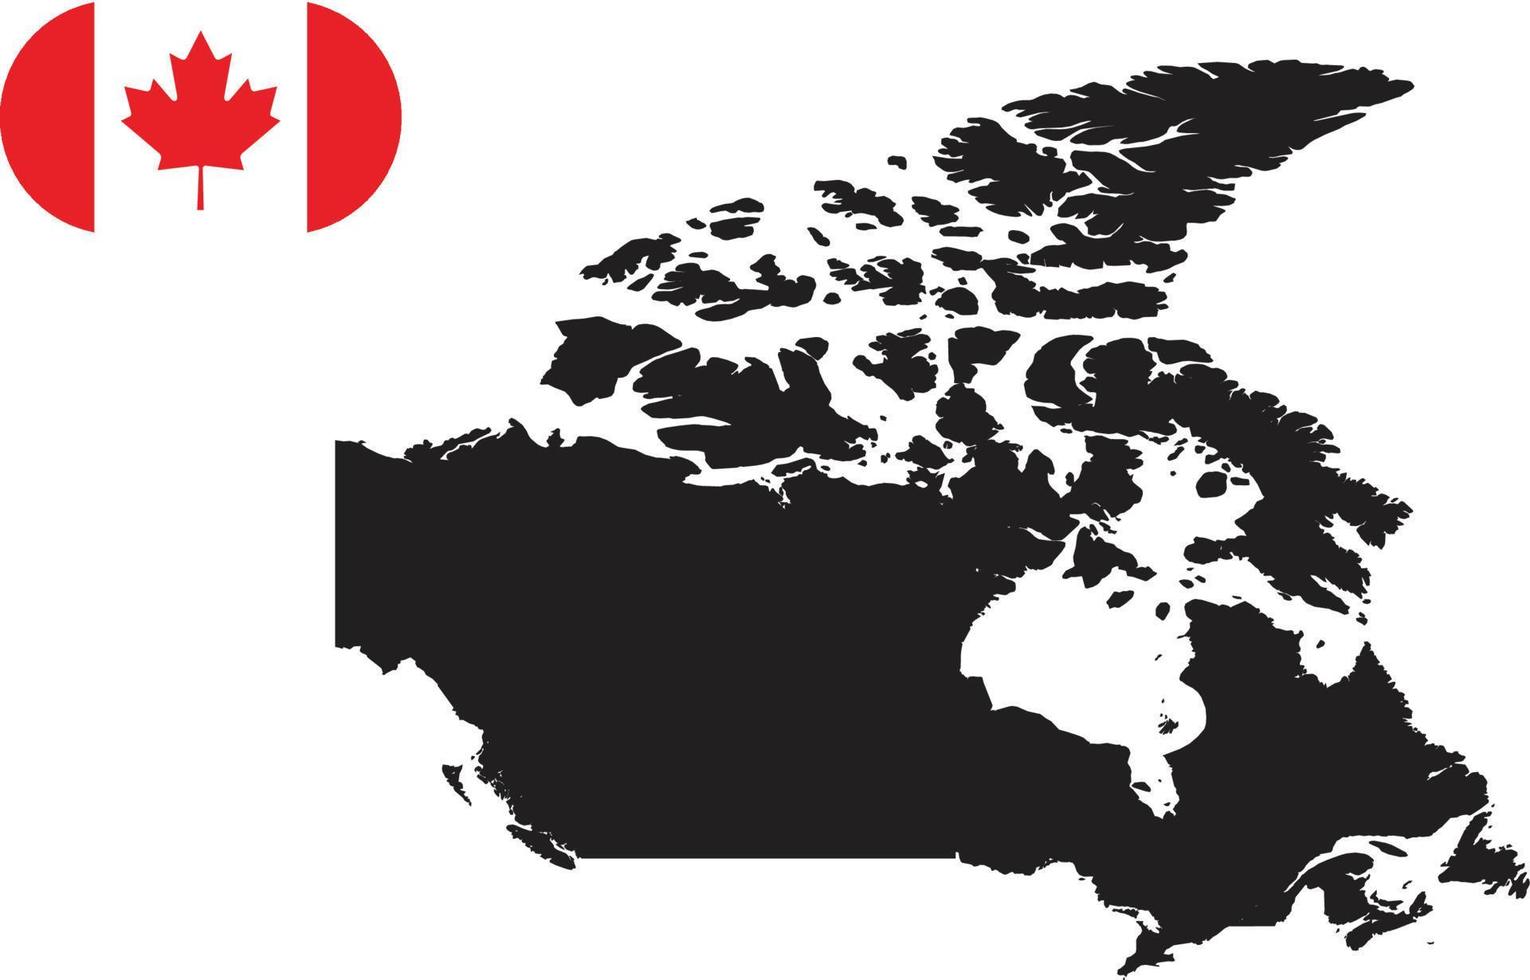 mapa e bandeira do canadá vetor